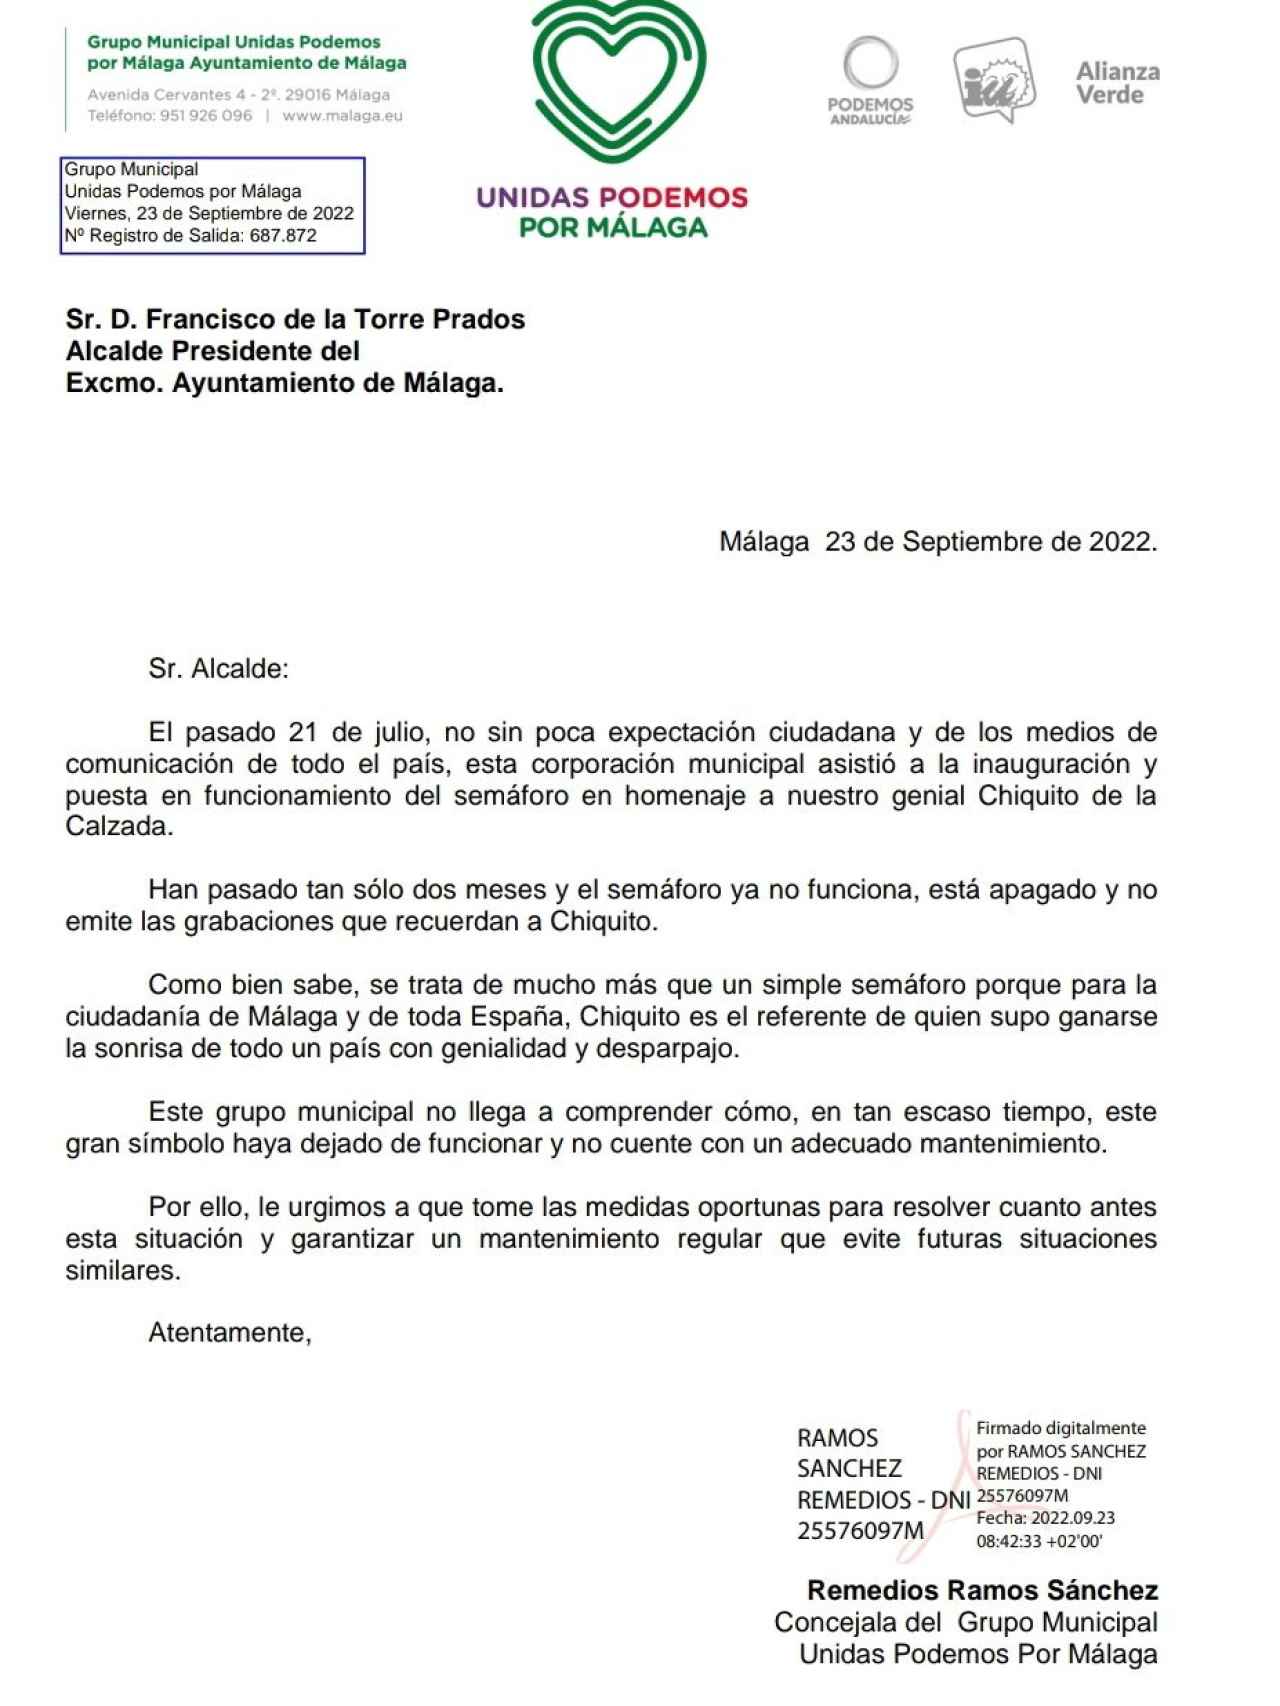 Carta de la concejala Remedios Ramos al alcalde Francisco de la Torre por el semáforo de Chiquito.